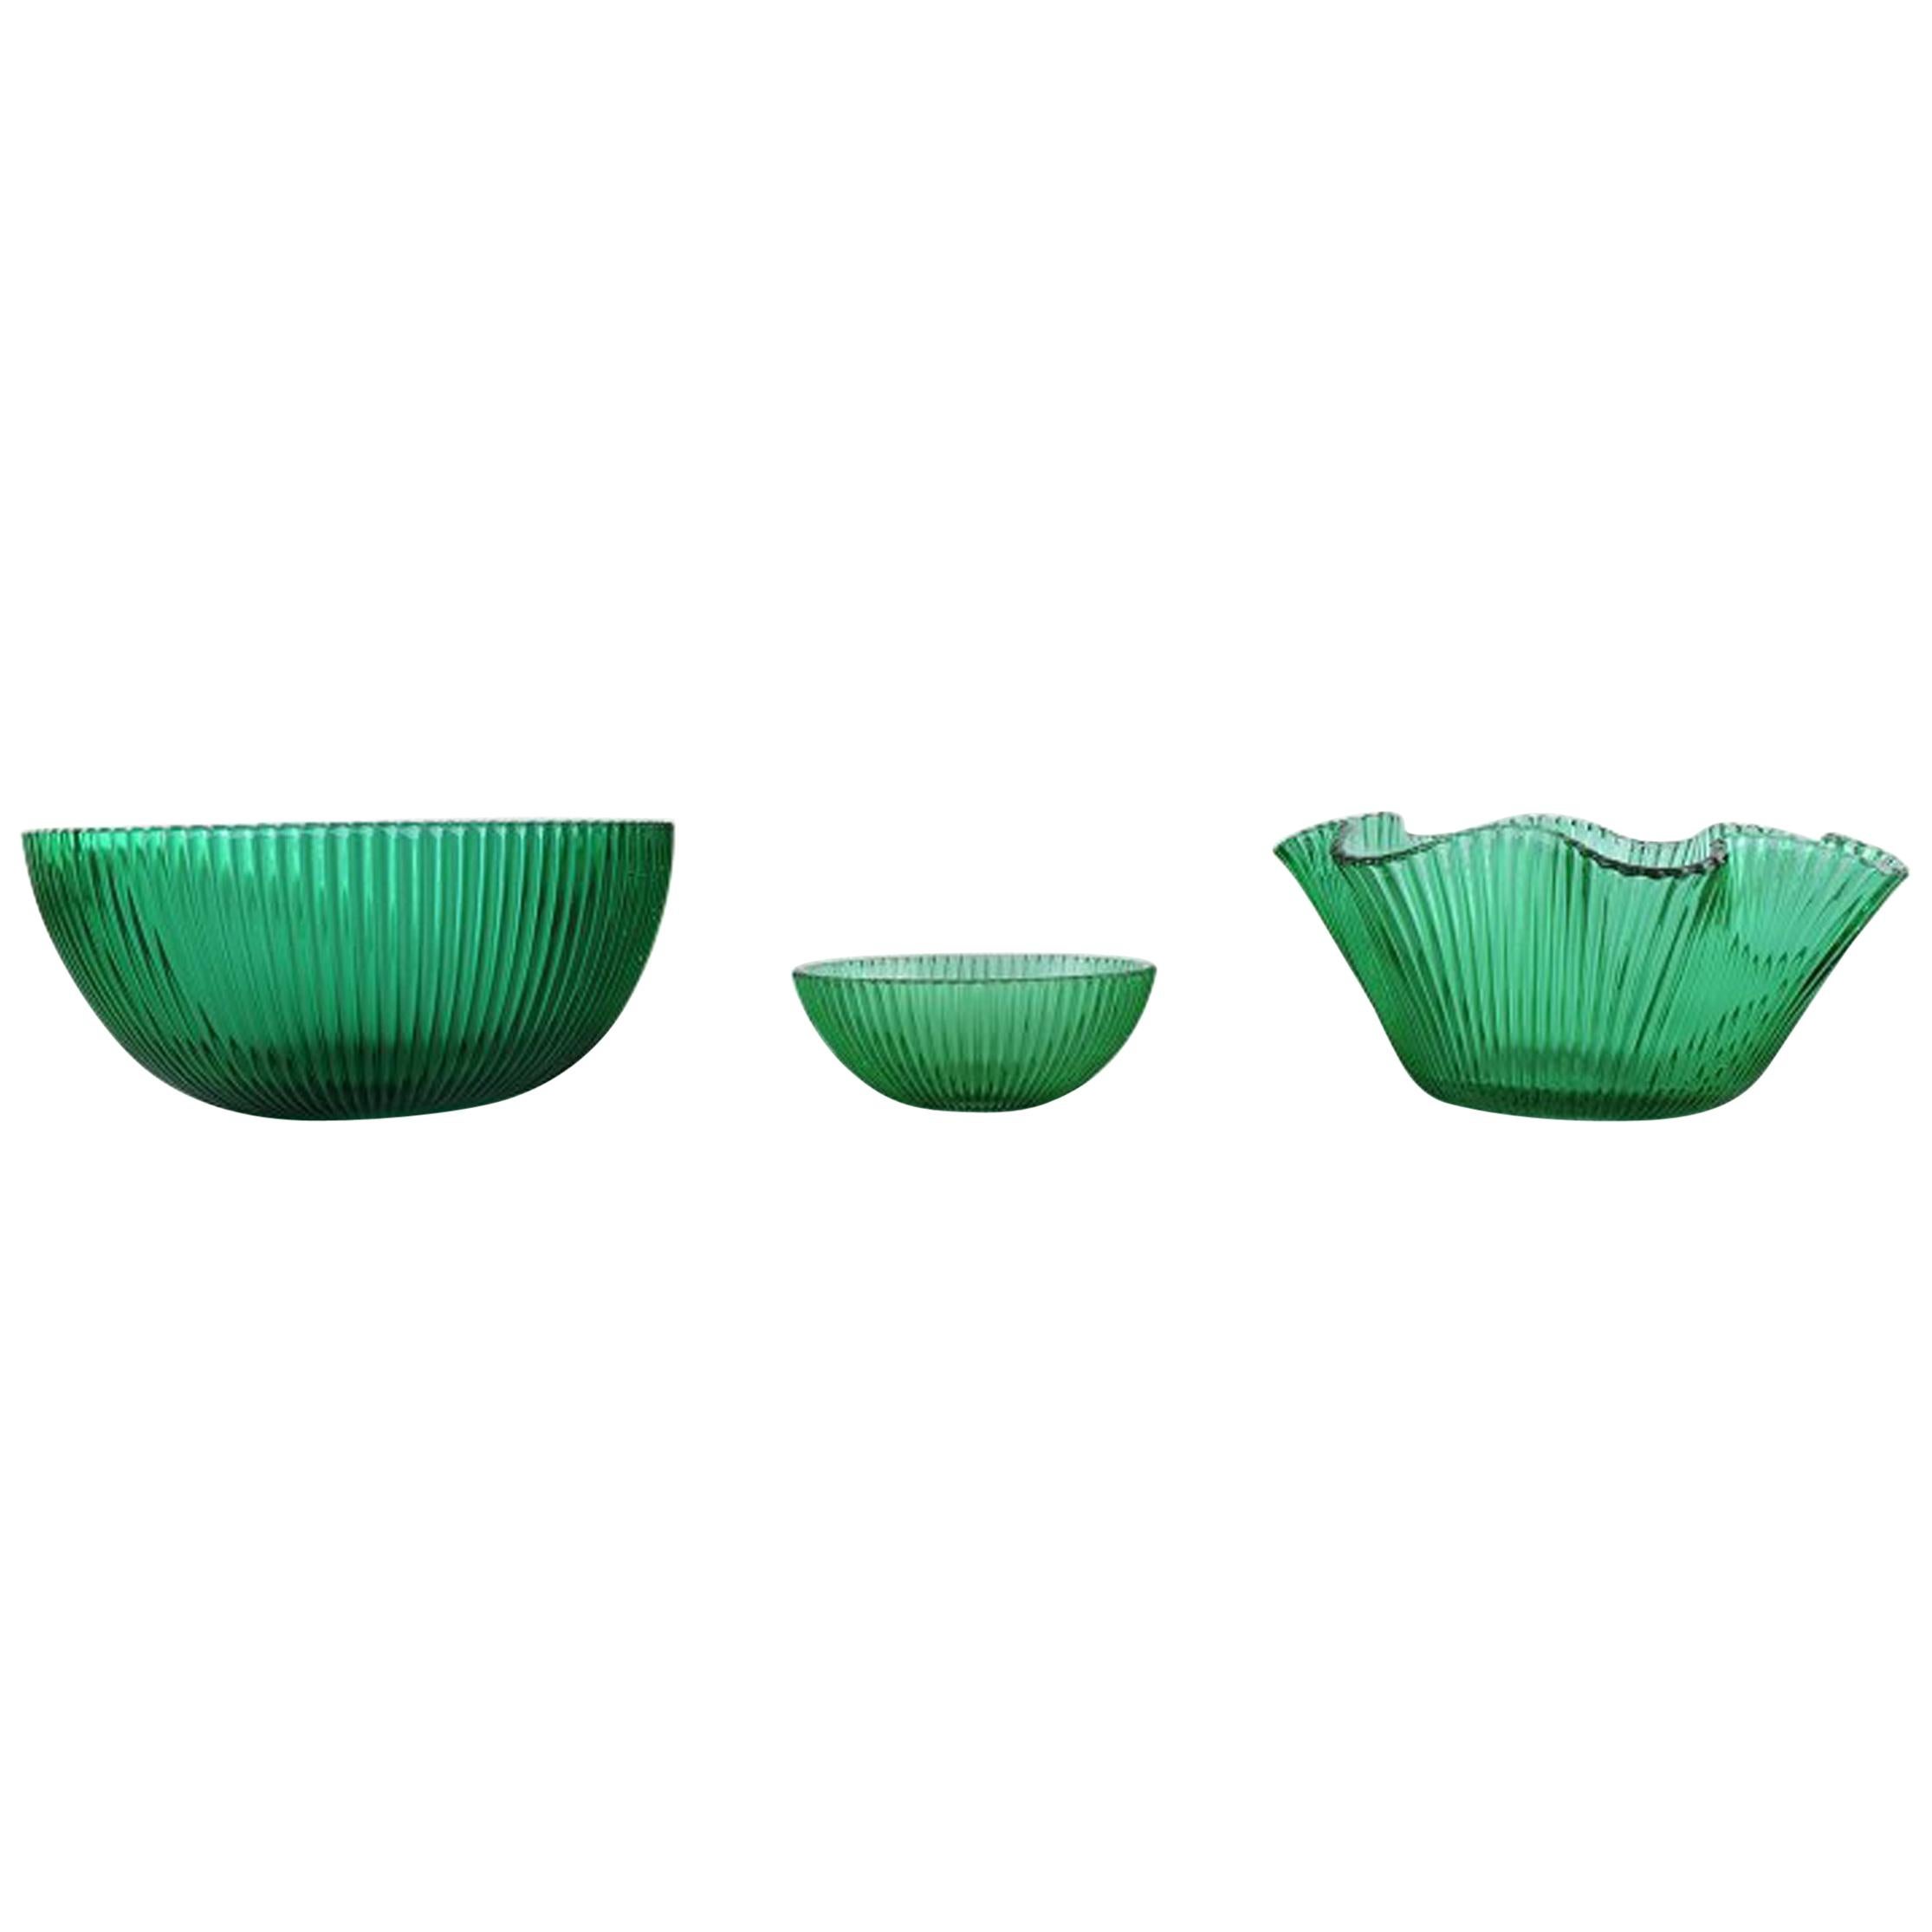 Arthur Percy pour Nybro, Suède, 3 bols en verre d'art vert, design cannelé